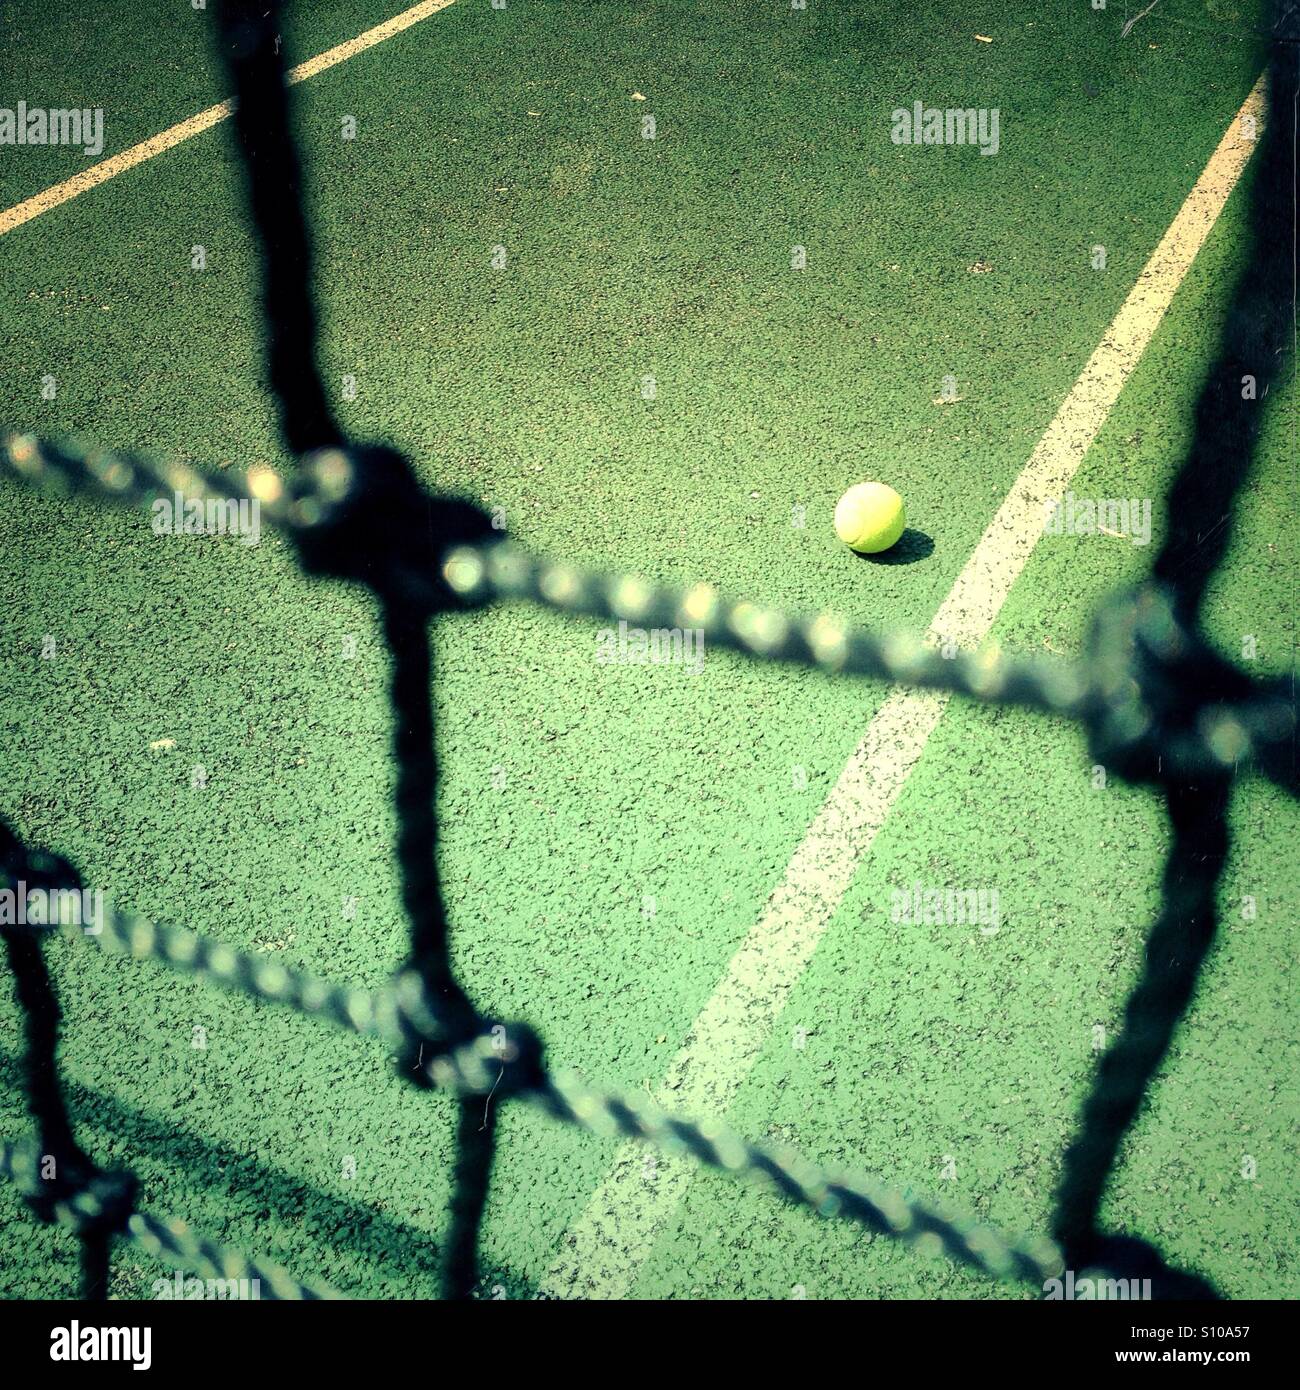 View of a tennis ball through a tennis court net Stock Photo